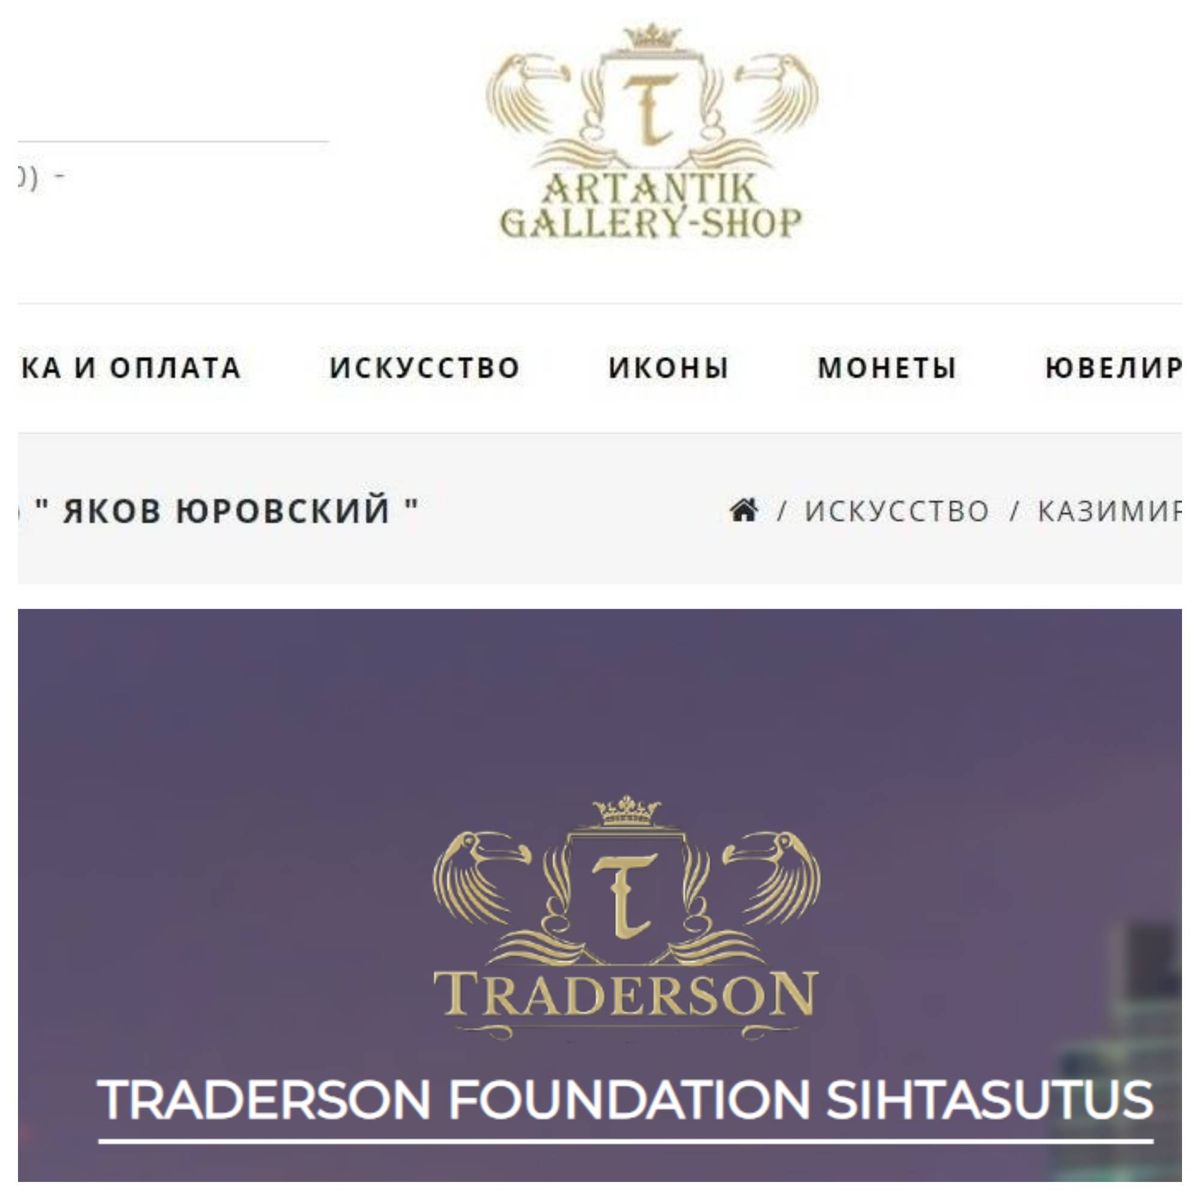 Логотип магазина, продававшего скорее всего поддельного Малевича (сверху) и логотип компании Андрея Тредерсона (снизу). 